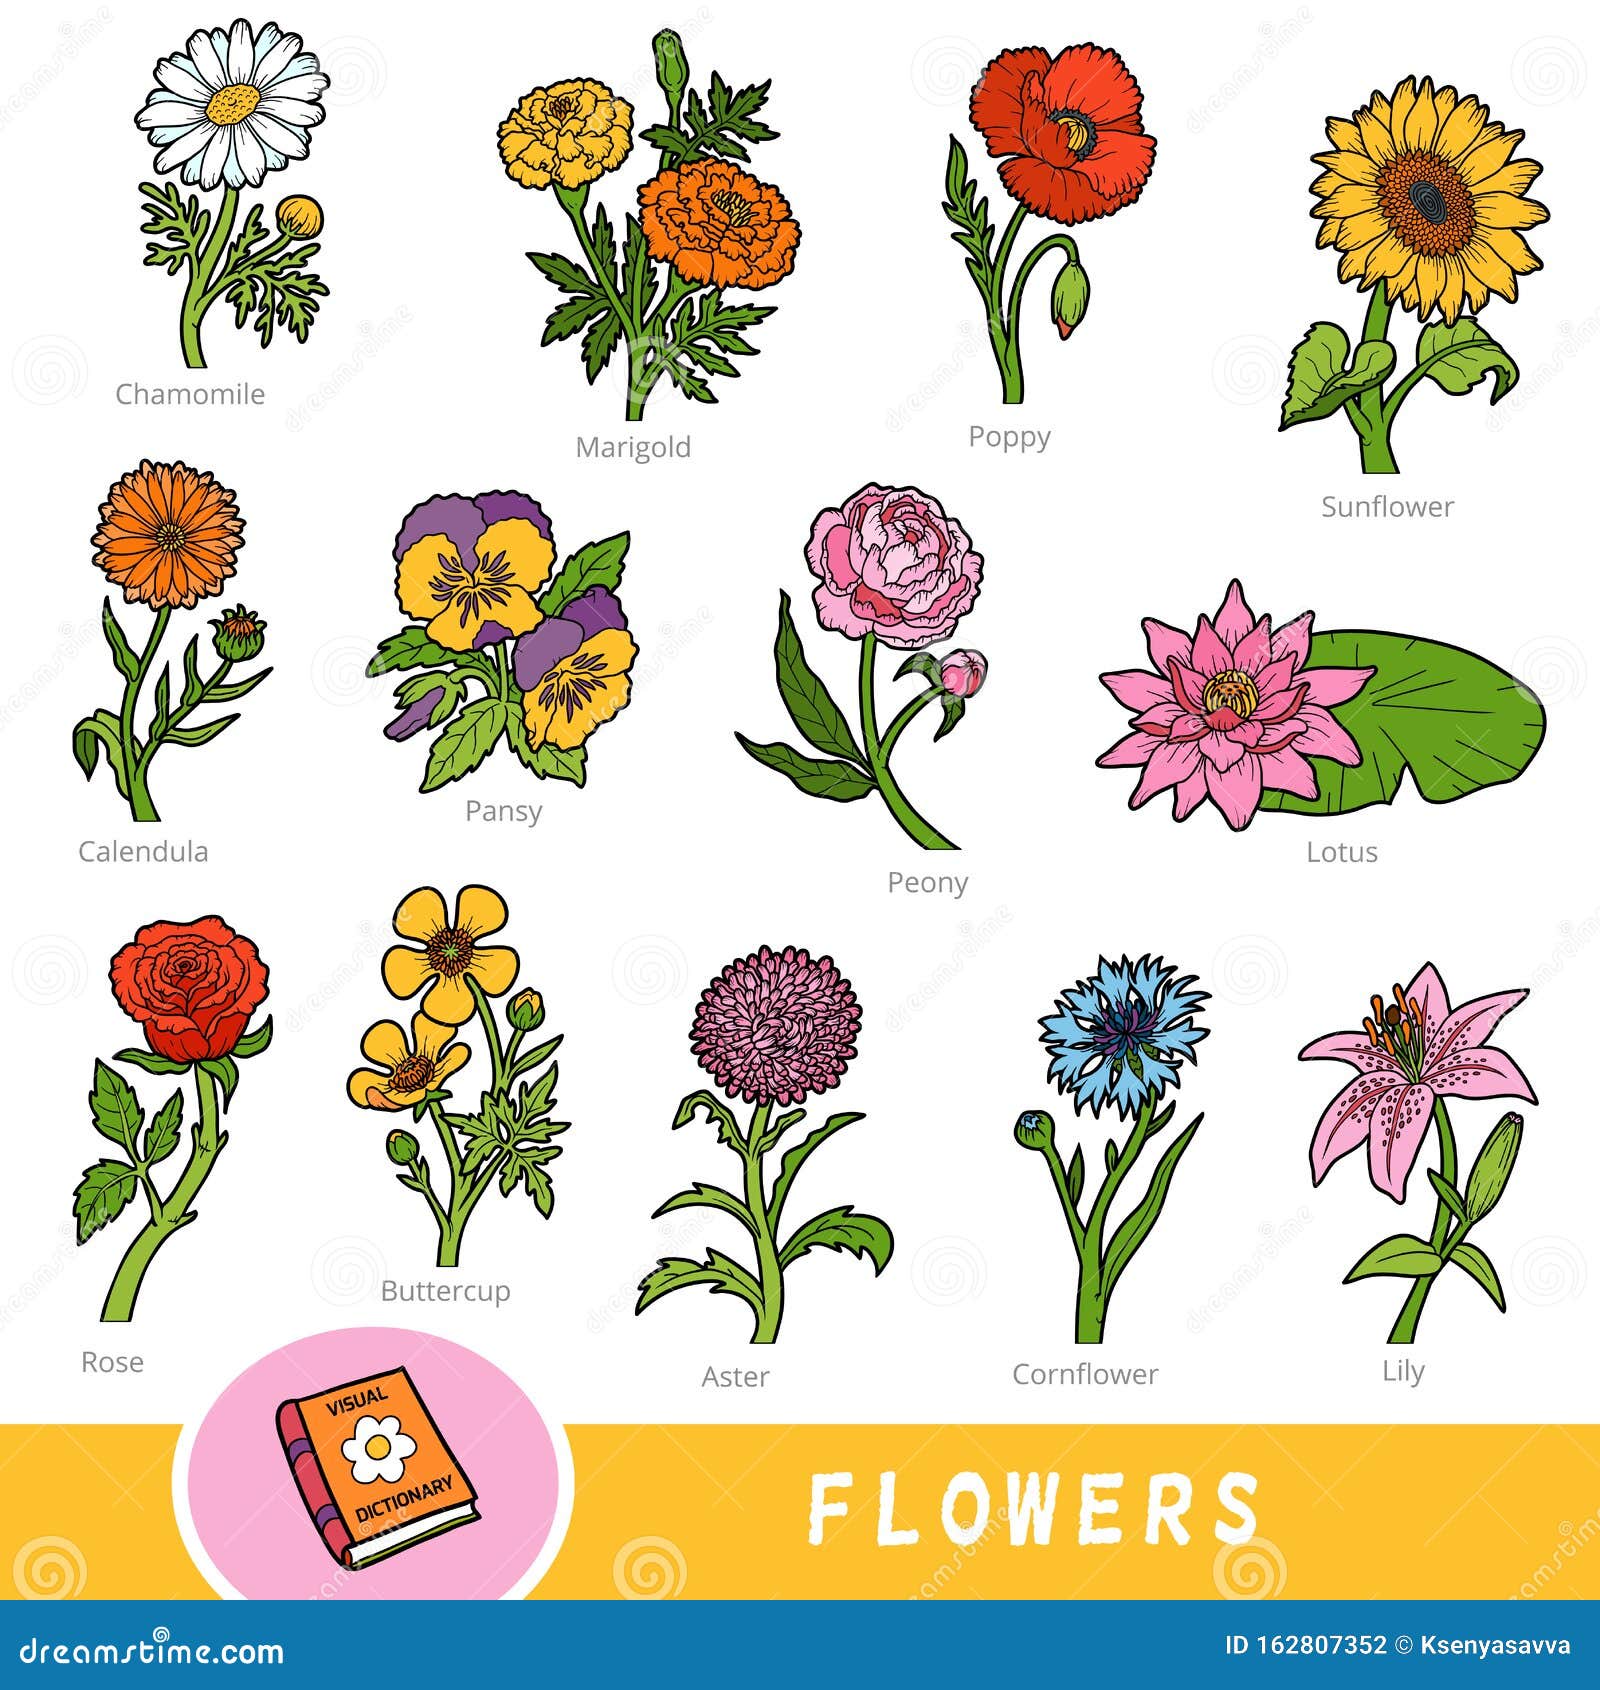 Cvetnoj nabor cvetov nabor predmetov prirody s imenami na anglijskom yazyke...